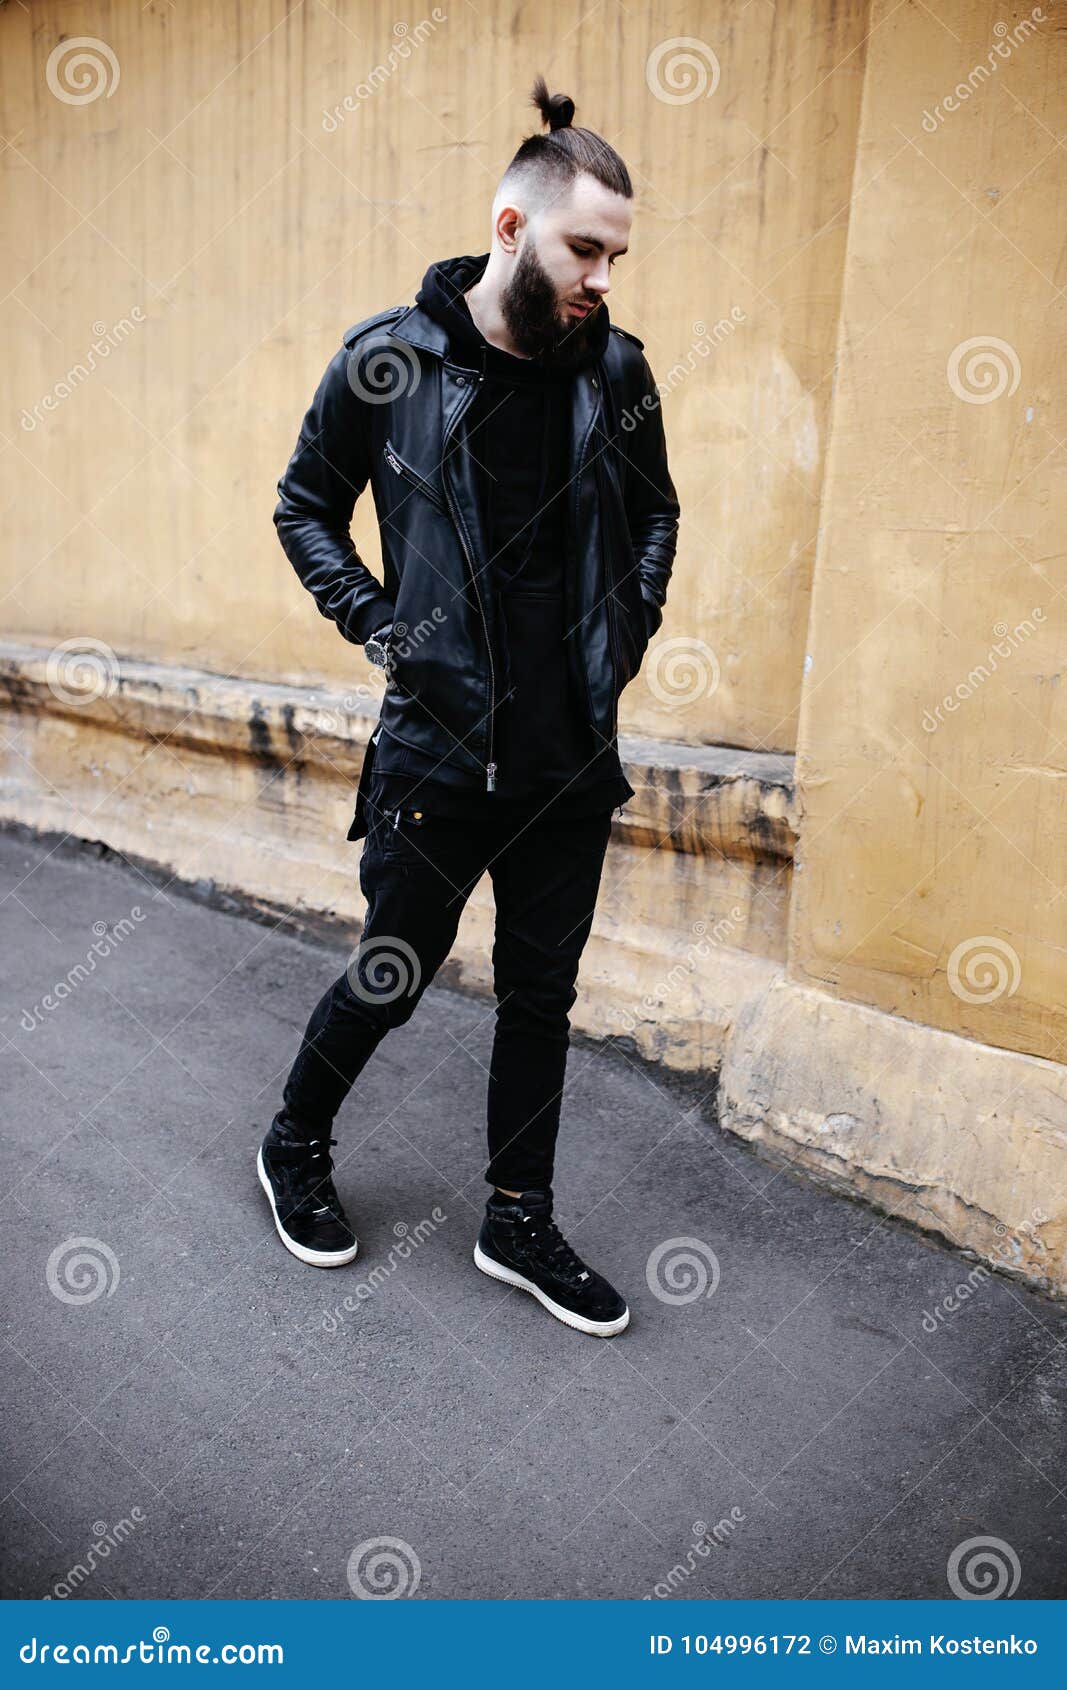 https://thumbs.dreamstime.com/z/el-hombre-barbudo-joven-moderno-en-ropa-negra-del-estilo-est%C3%A1-caminando-la-calle-104996172.jpg